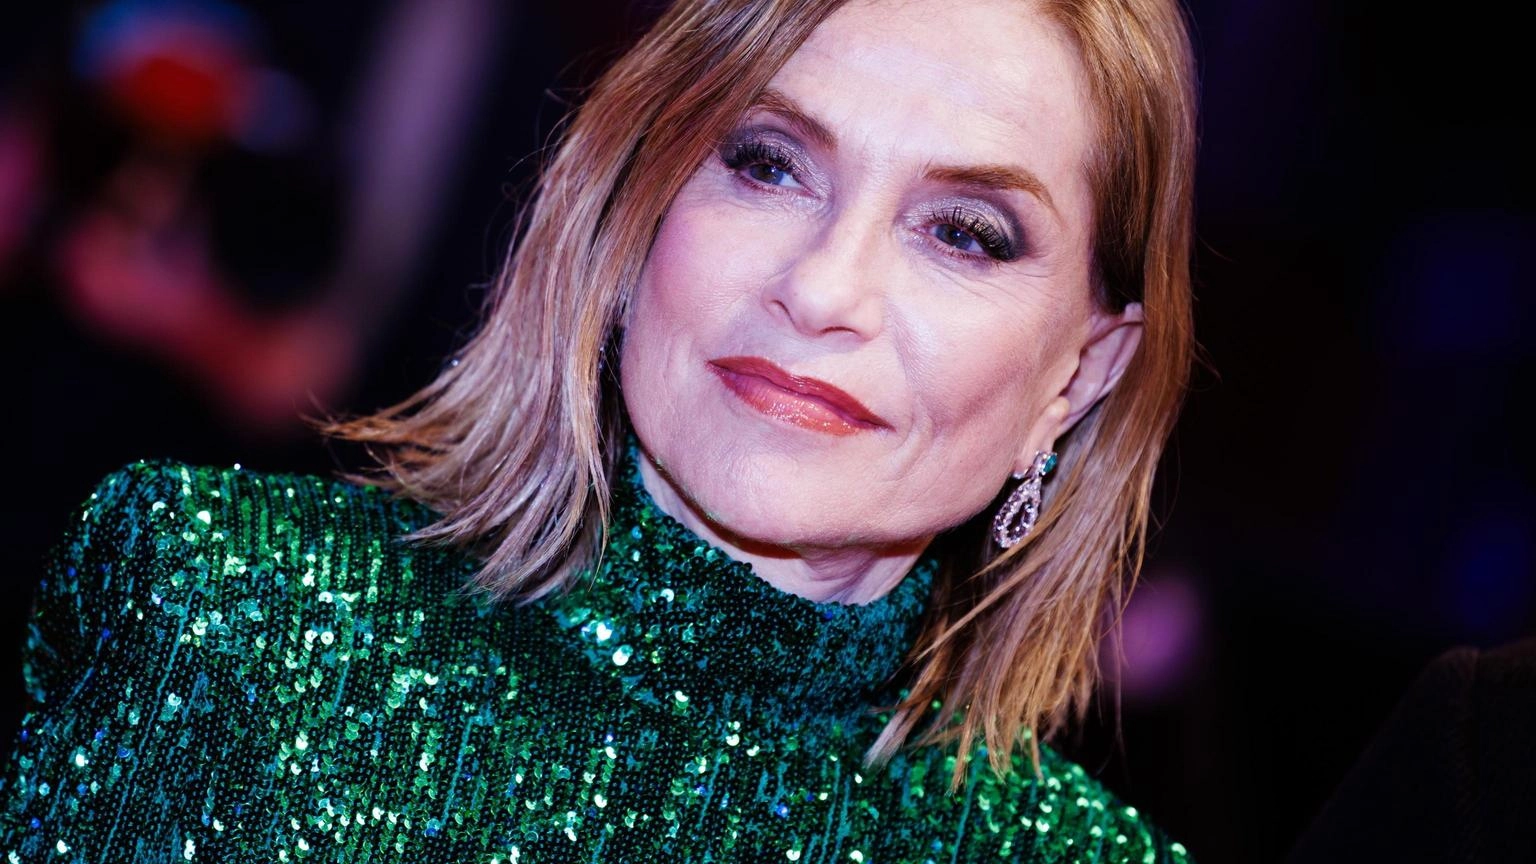 Isabelle Huppert presiederà la giuria del Leone d'oro alla 81ª Mostra del cinema di Venezia. L'attrice, simbolo di professionalità, si dice onorata di diventare spettatrice privilegiata del festival.